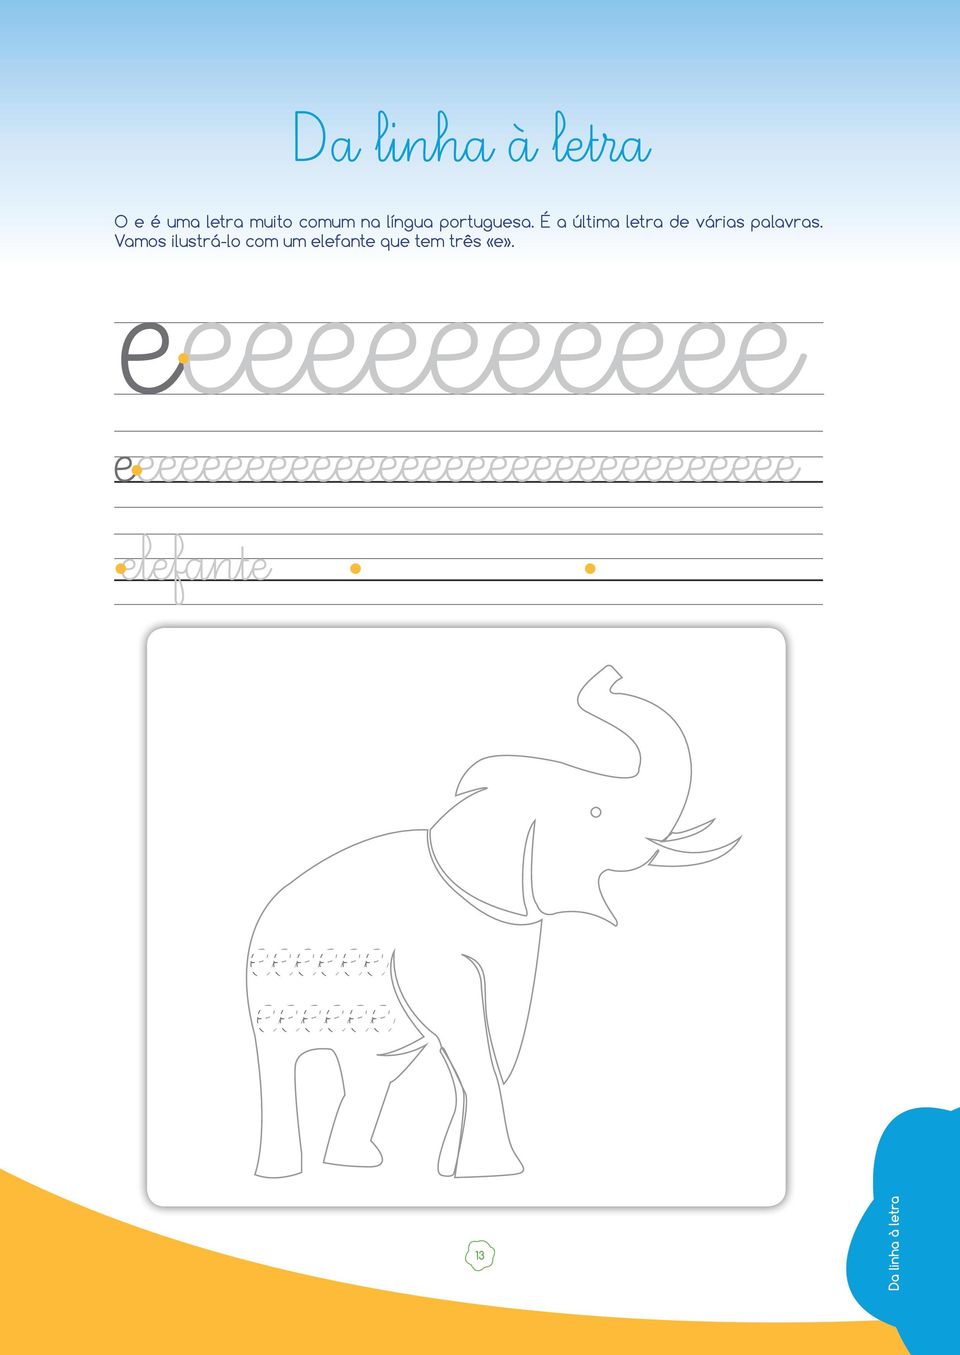 Vamos ilustrá-lo com um elefante que tem três «e».